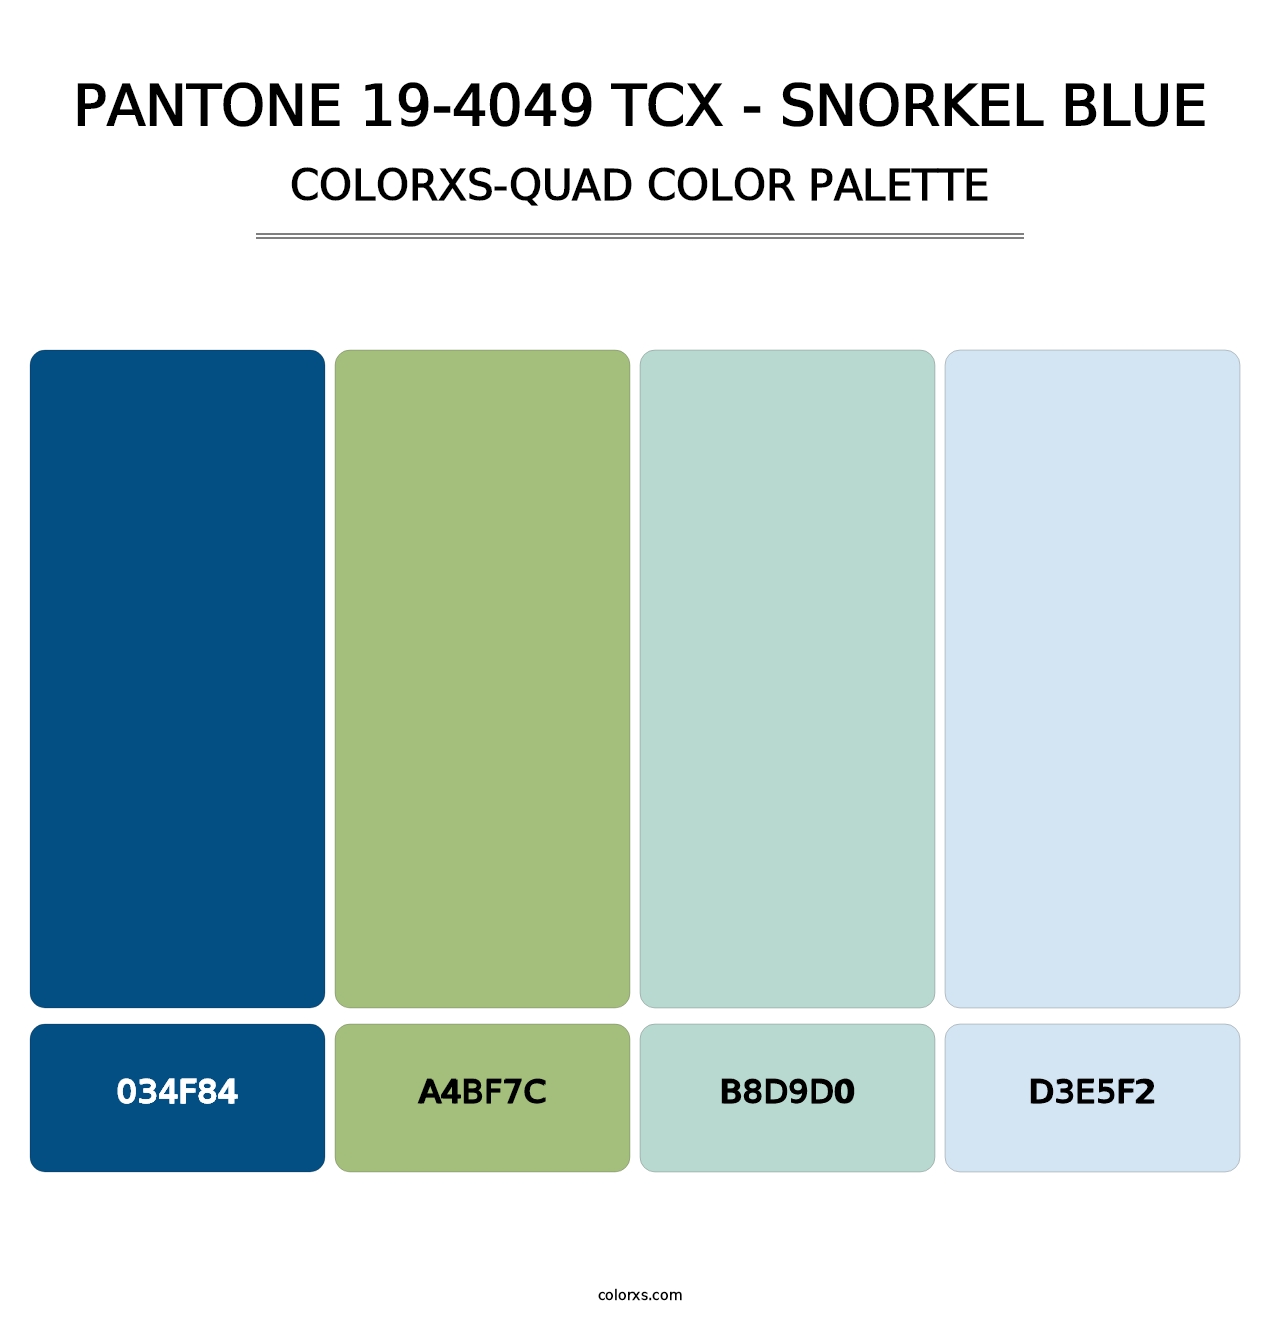 PANTONE 19-4049 TCX - Snorkel Blue - Colorxs Quad Palette